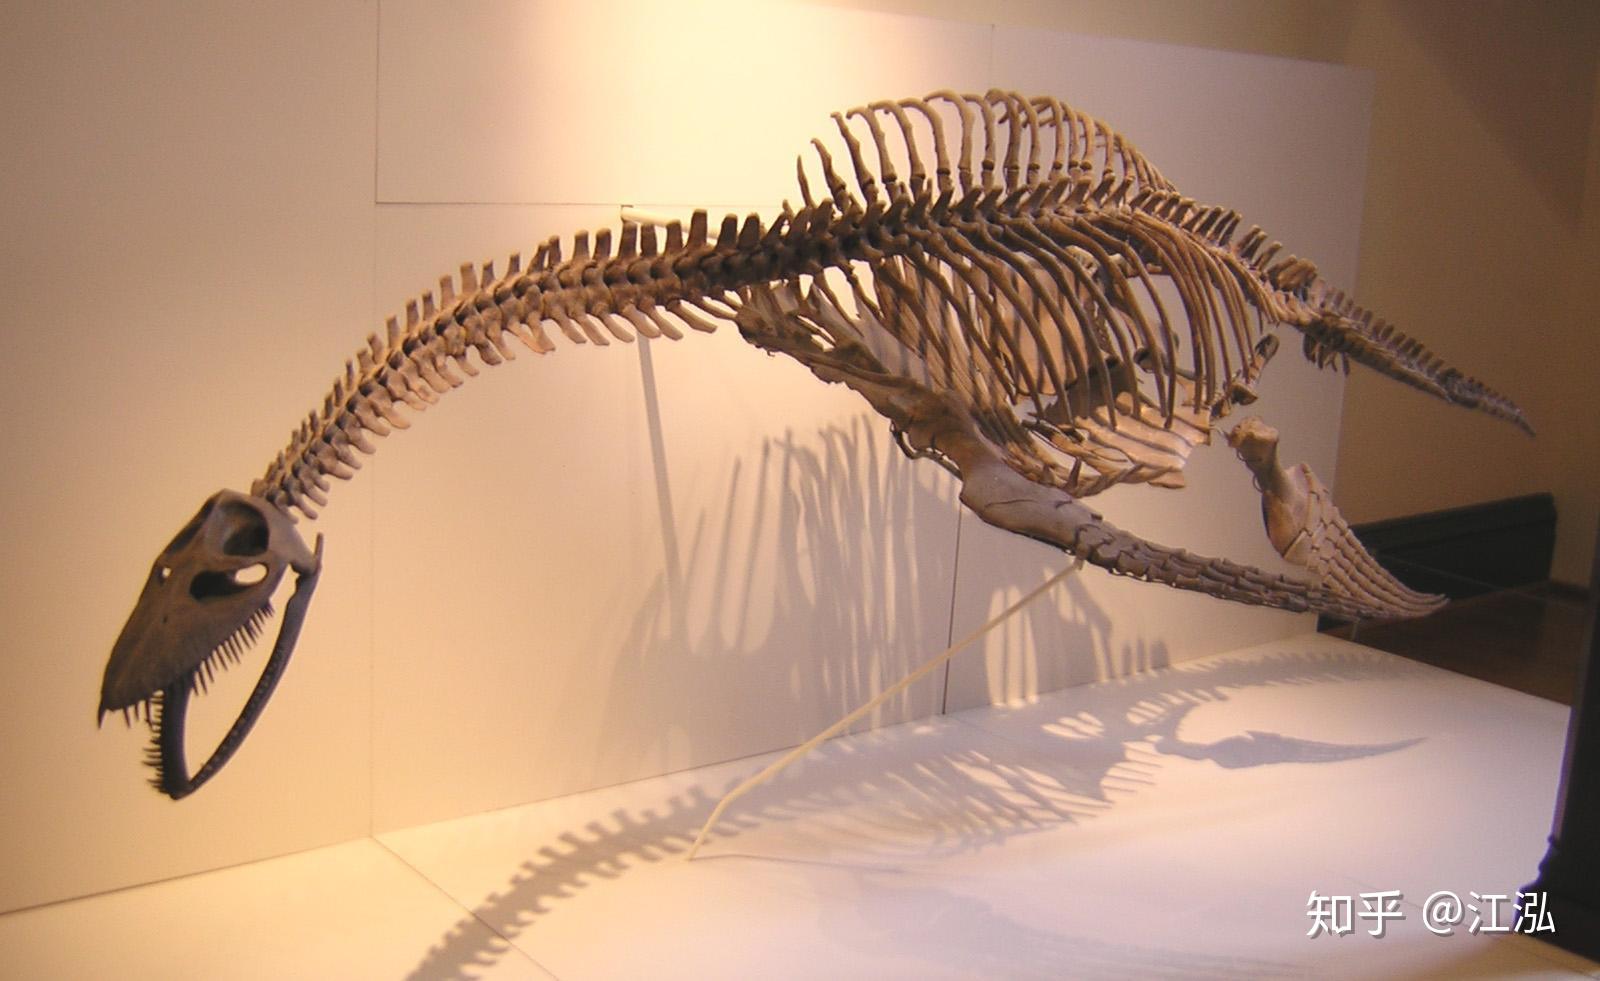 为什么长颈蛇颈龙的脖子进化得那么长